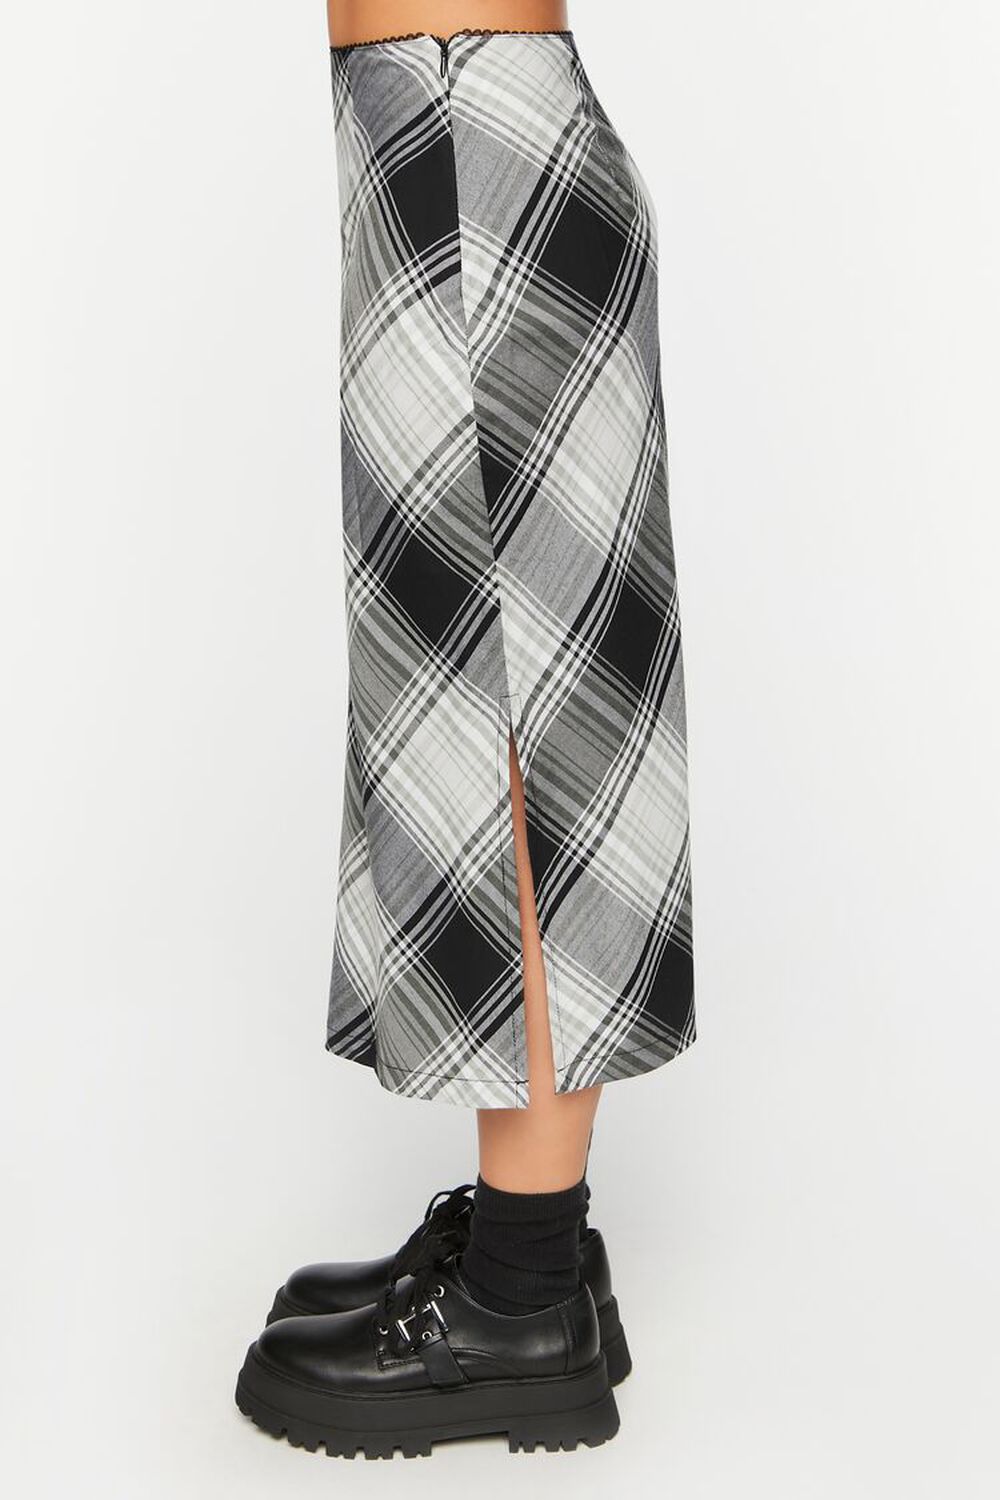 BLACK/MULTI Plaid A-Line Midi Skirt, image 3